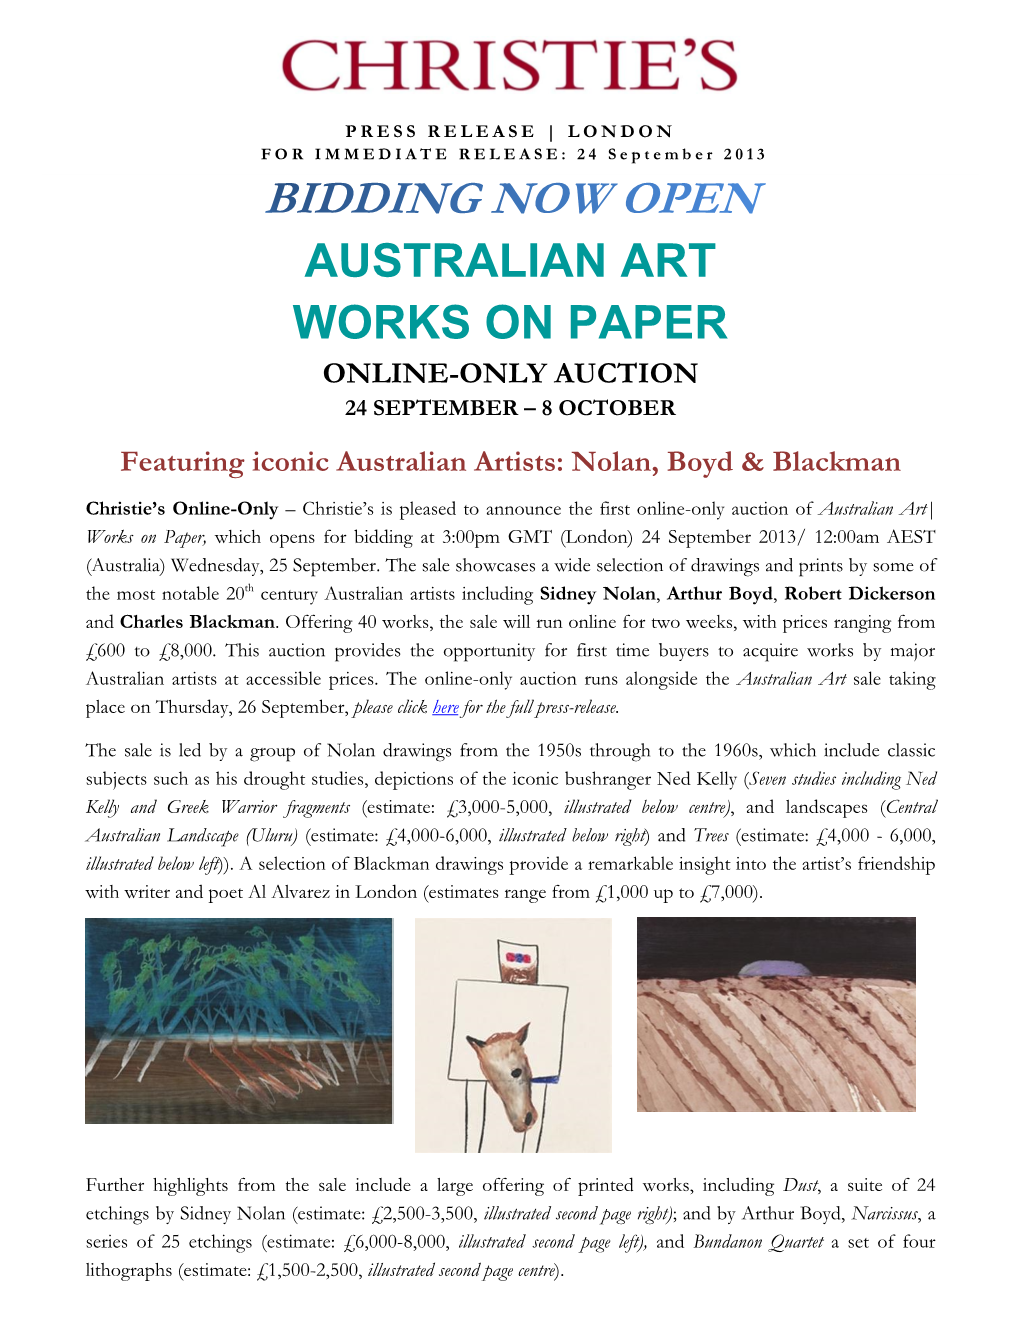 Australian Art Works on Paper Online-Only Auction 24 September – 8 October